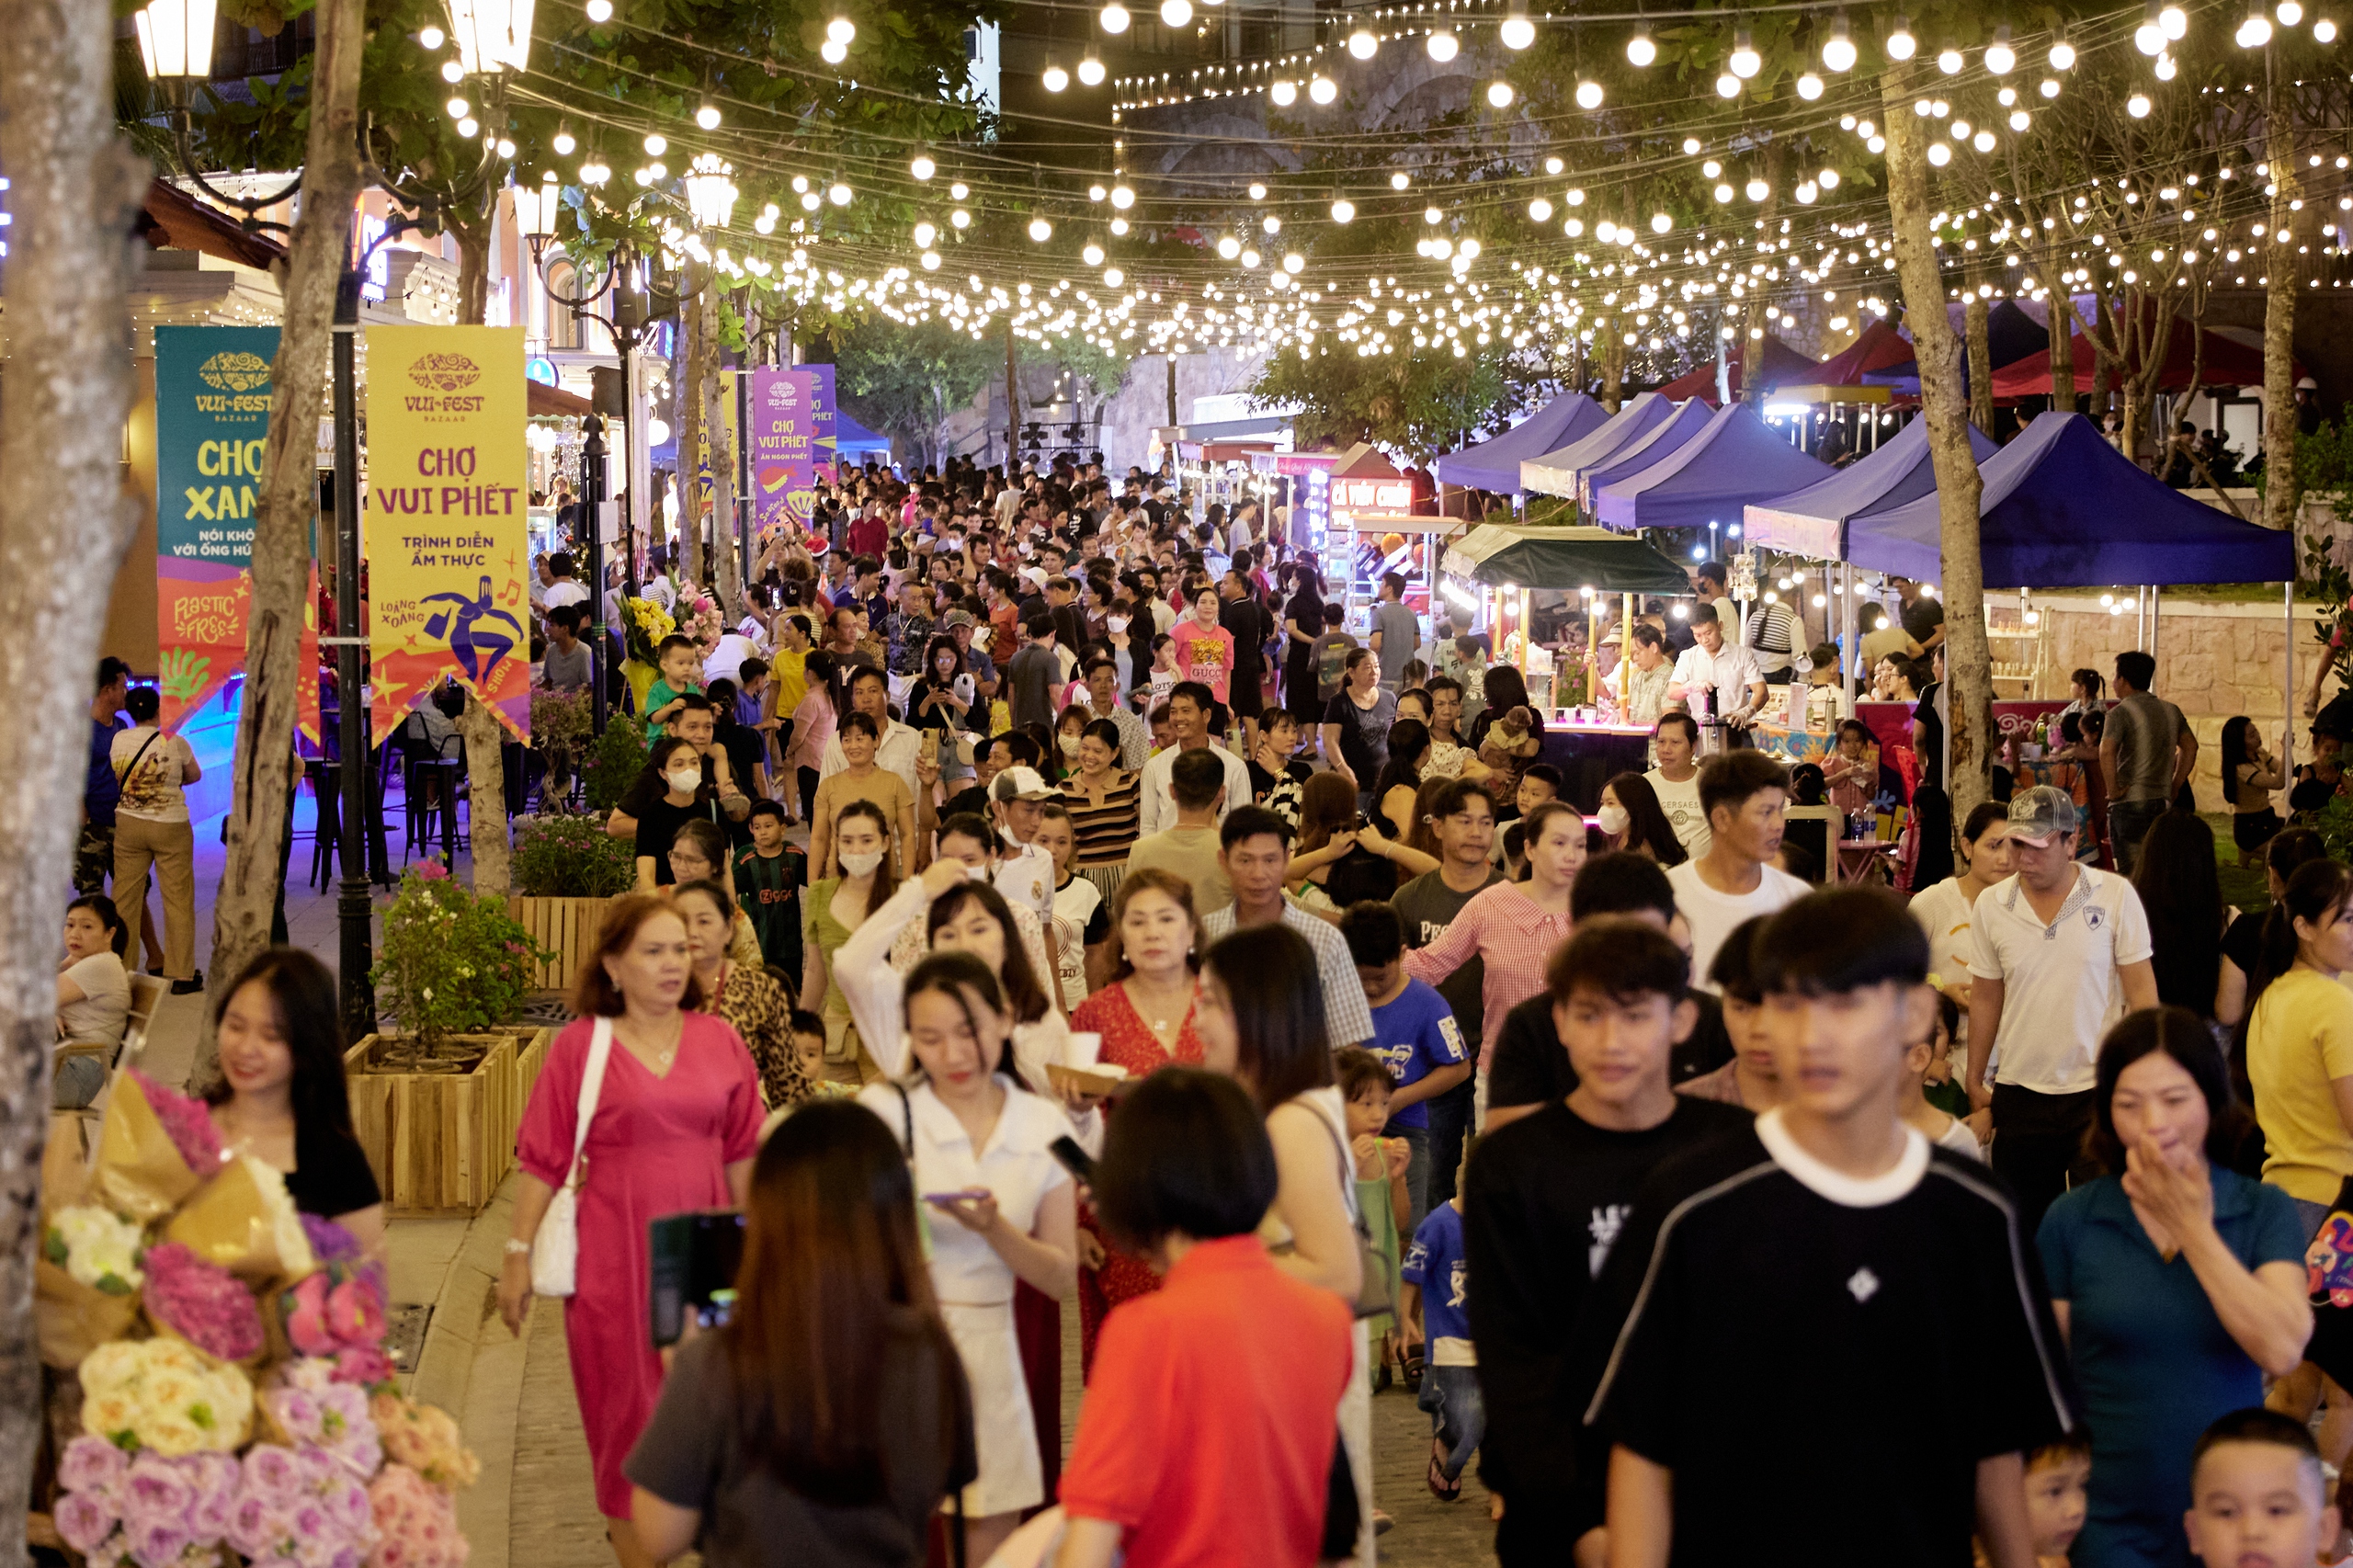 Không bar hay karaoke, sao chợ đêm Vui Phết vẫn khiến du khách hưng phấn?